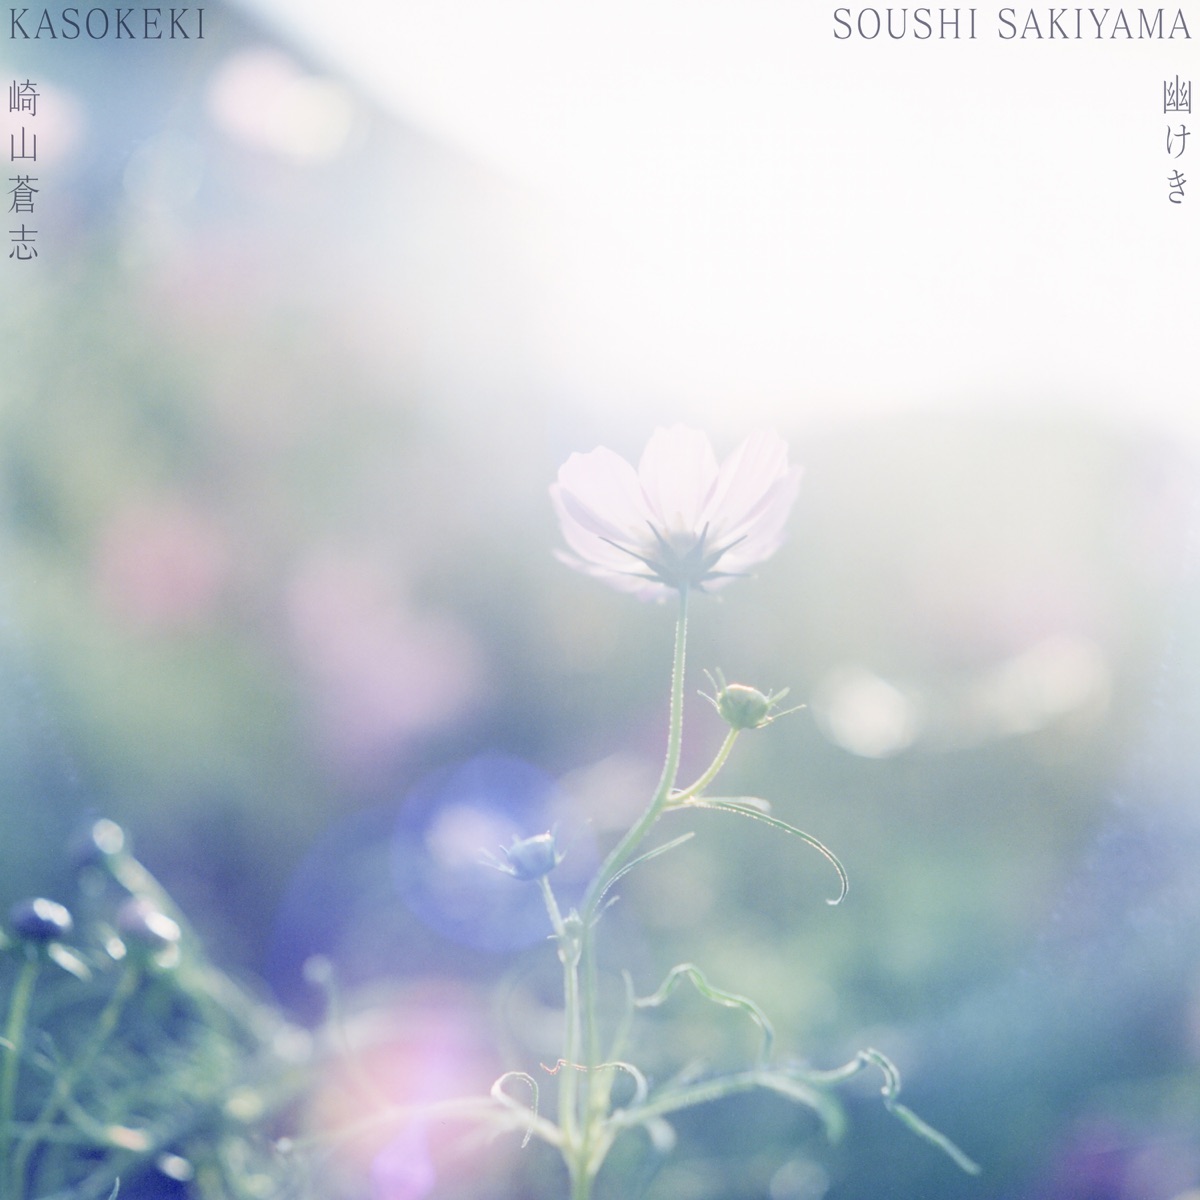 Cover art for『Soushi Sakiyama - 幽けき』from the release『Kasokeki